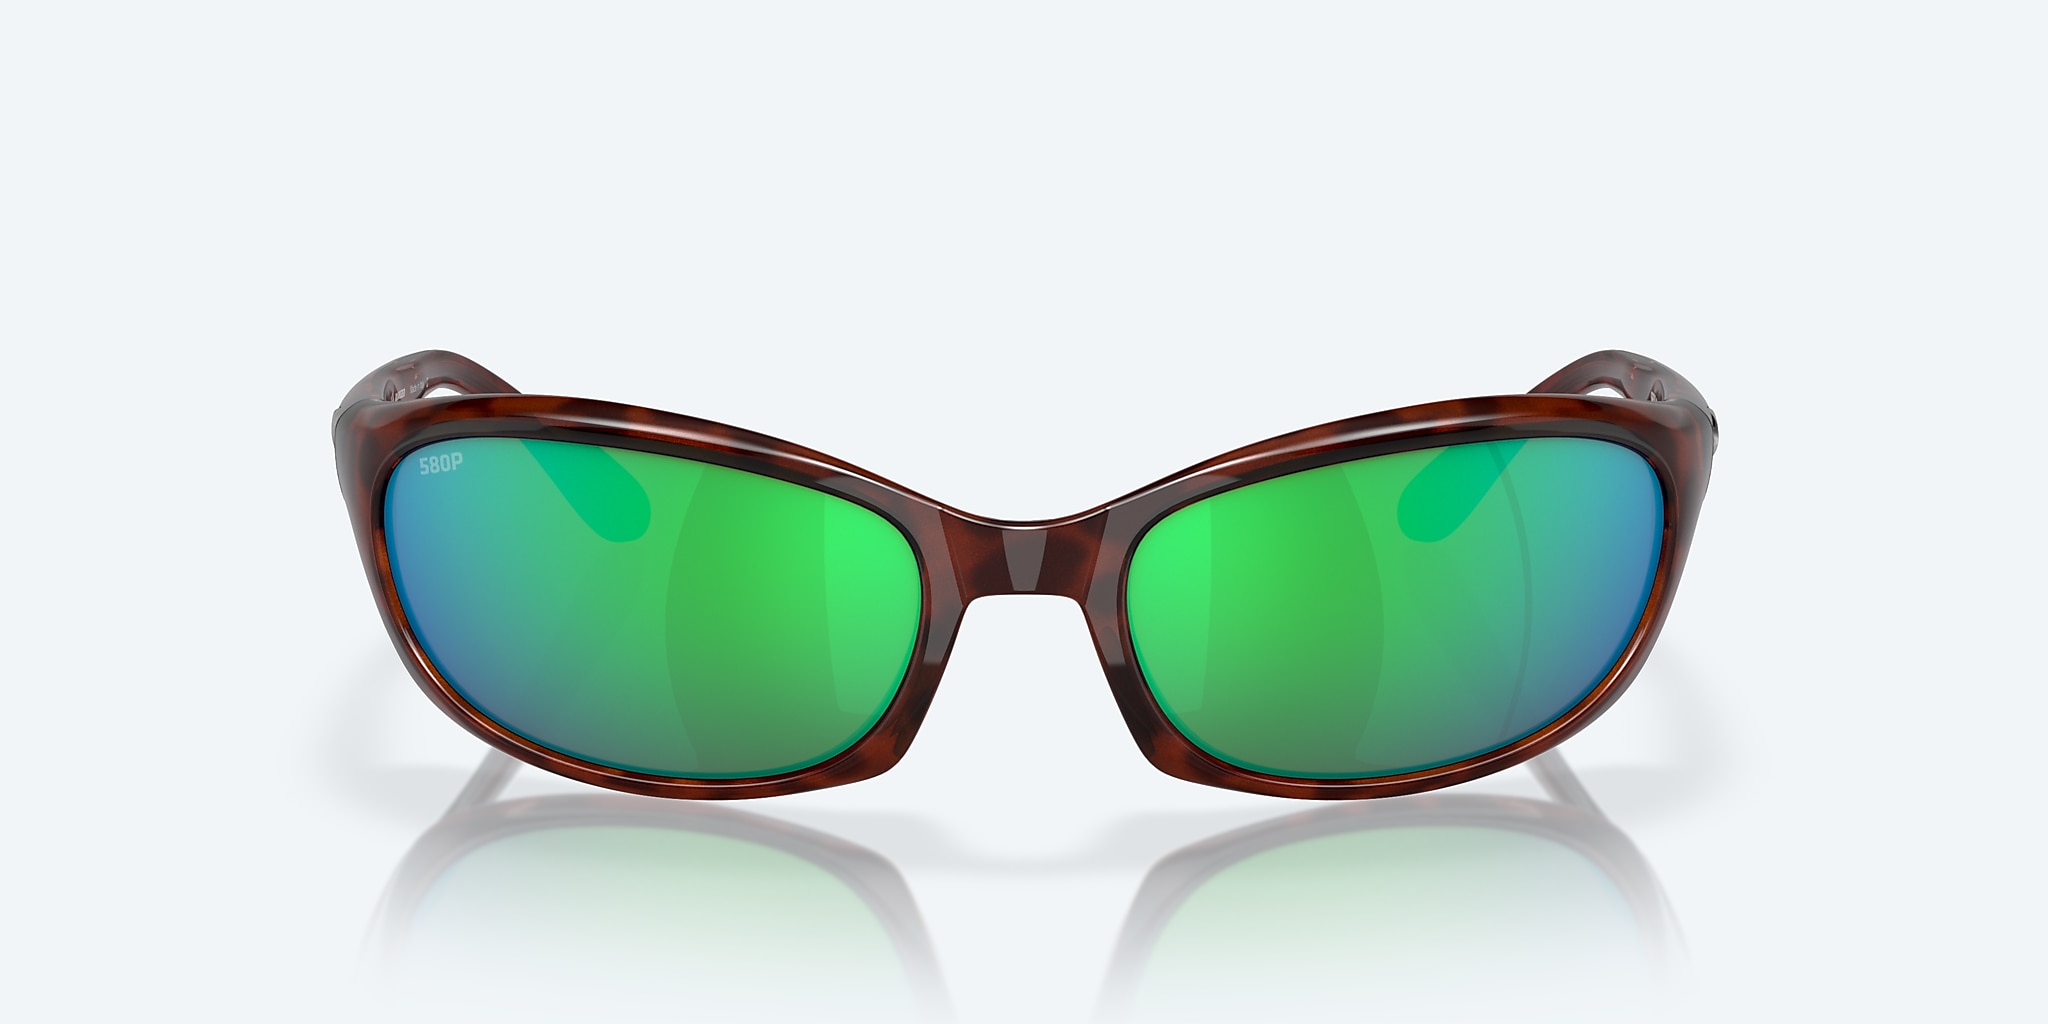 Harpoon Polarized Sunglasses Del | in Mirror Costa Mar® Green